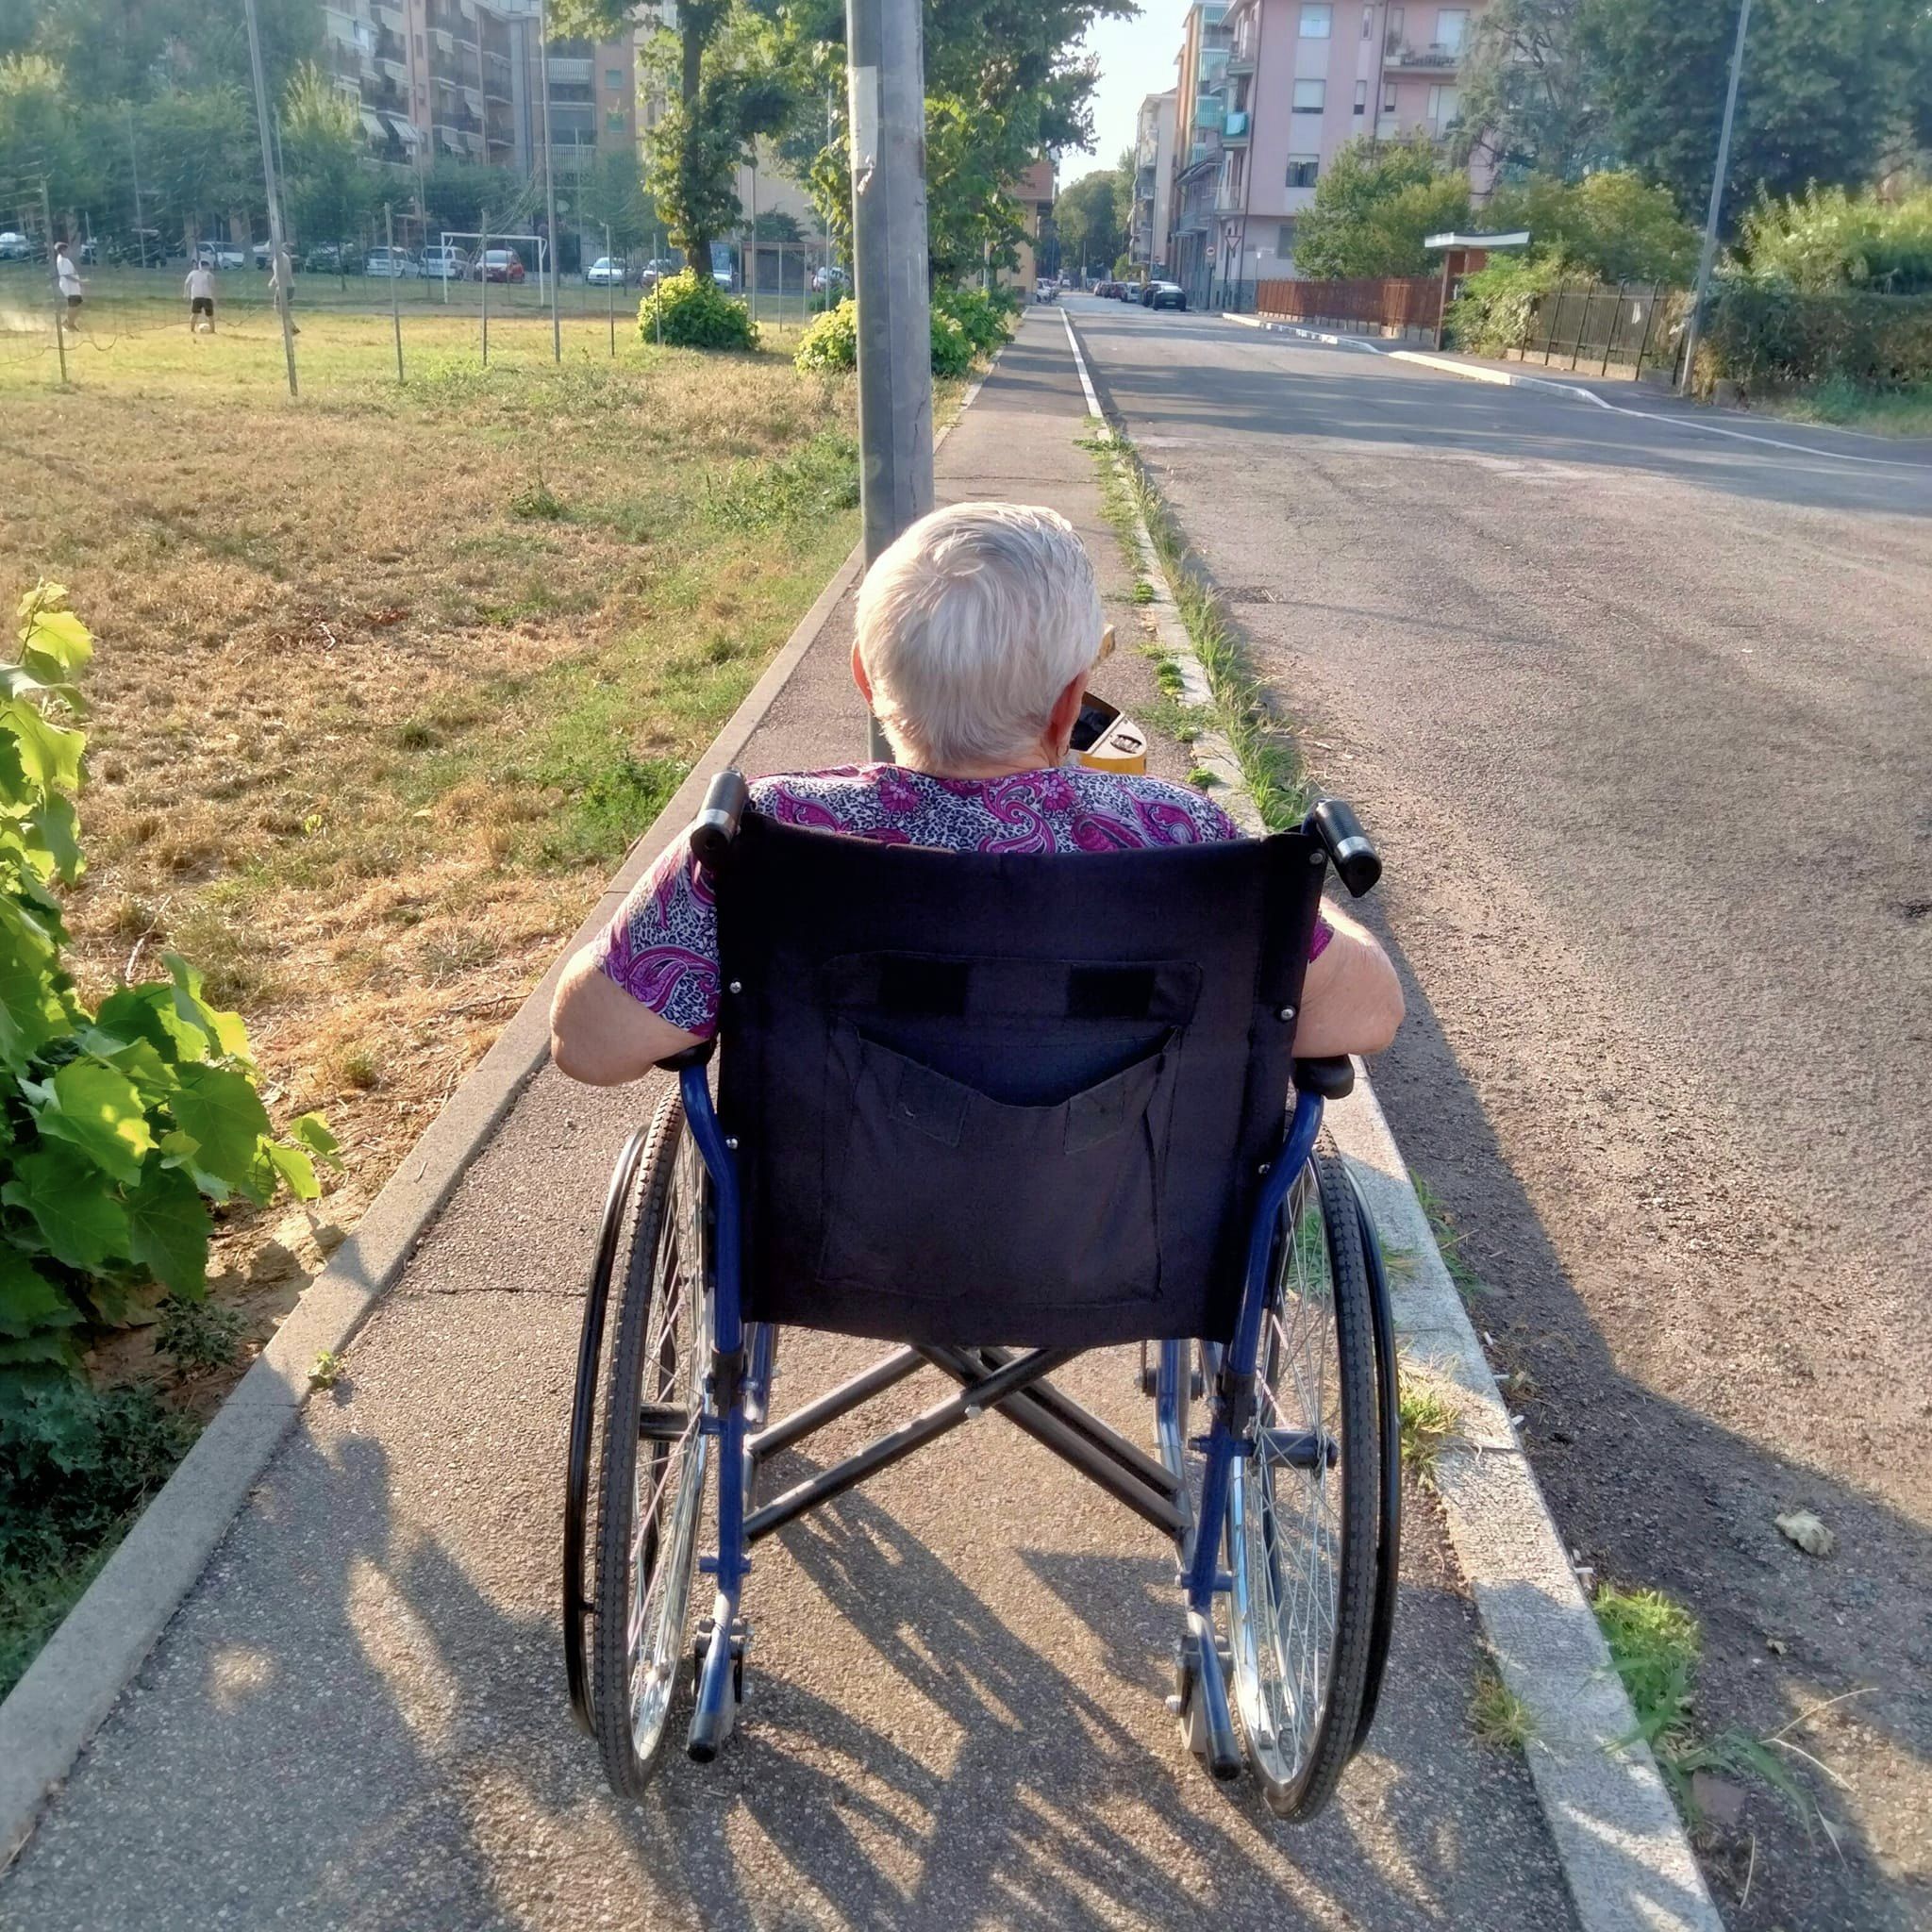 NICHELINO – Il palo della luce e il marciapiede stretto: la donna in carrozzina resta bloccata